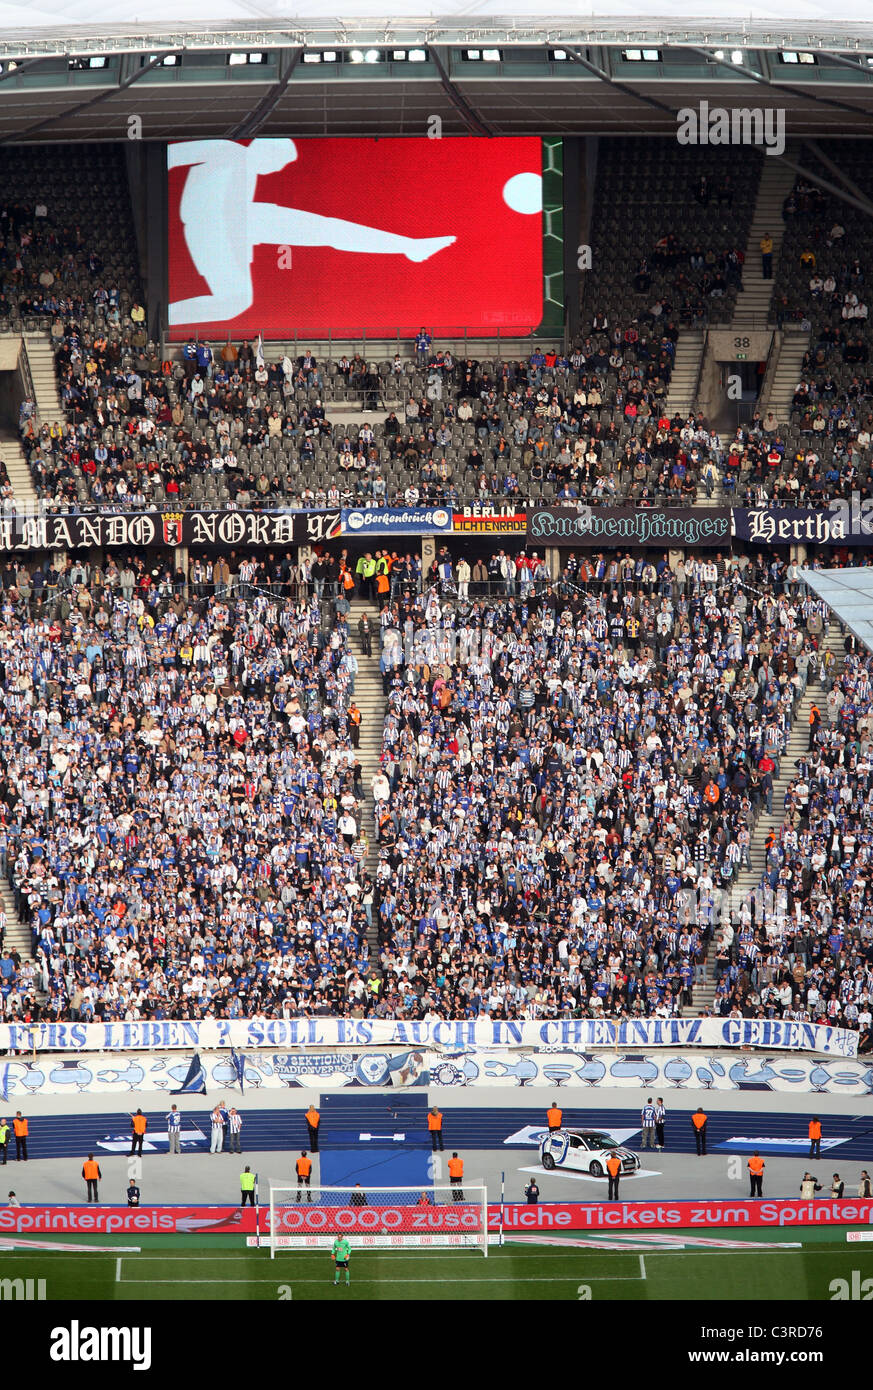 Das Olympiastadion während eines Fußballspiels, Berlin, Deutschland Stockfoto